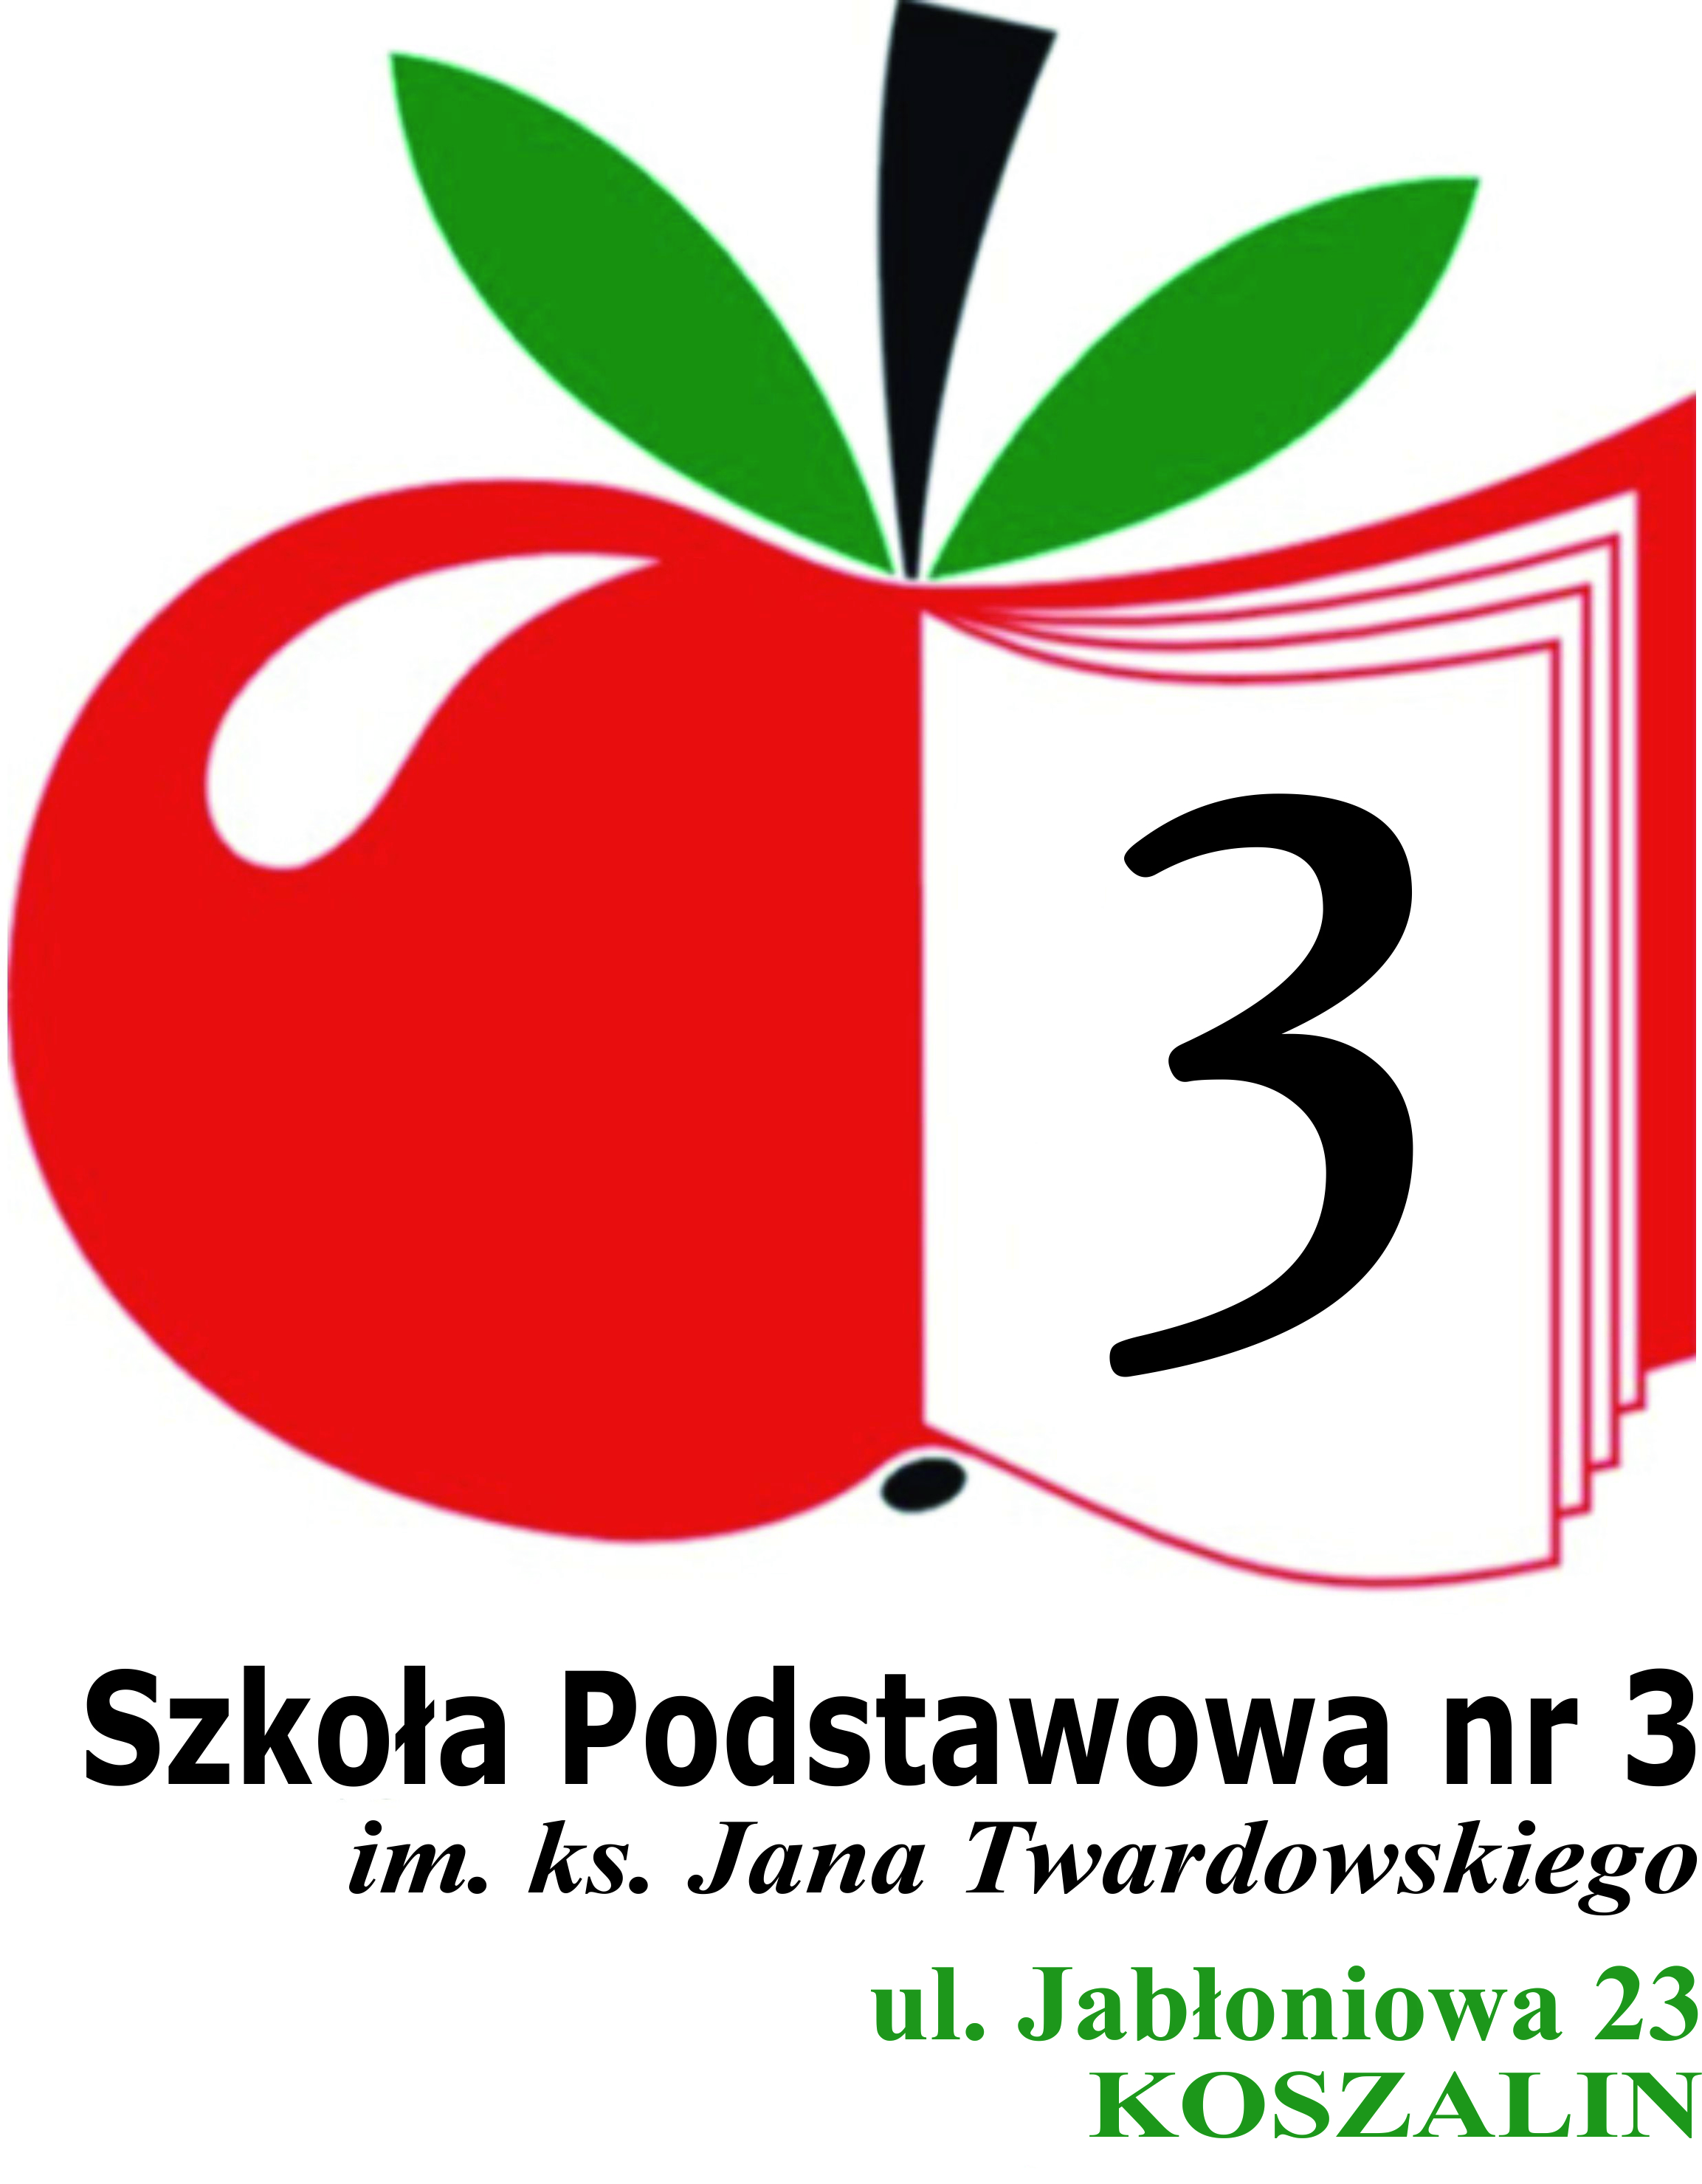 Czerwone jabłko połączone z kształtem książki i numerem szkoły